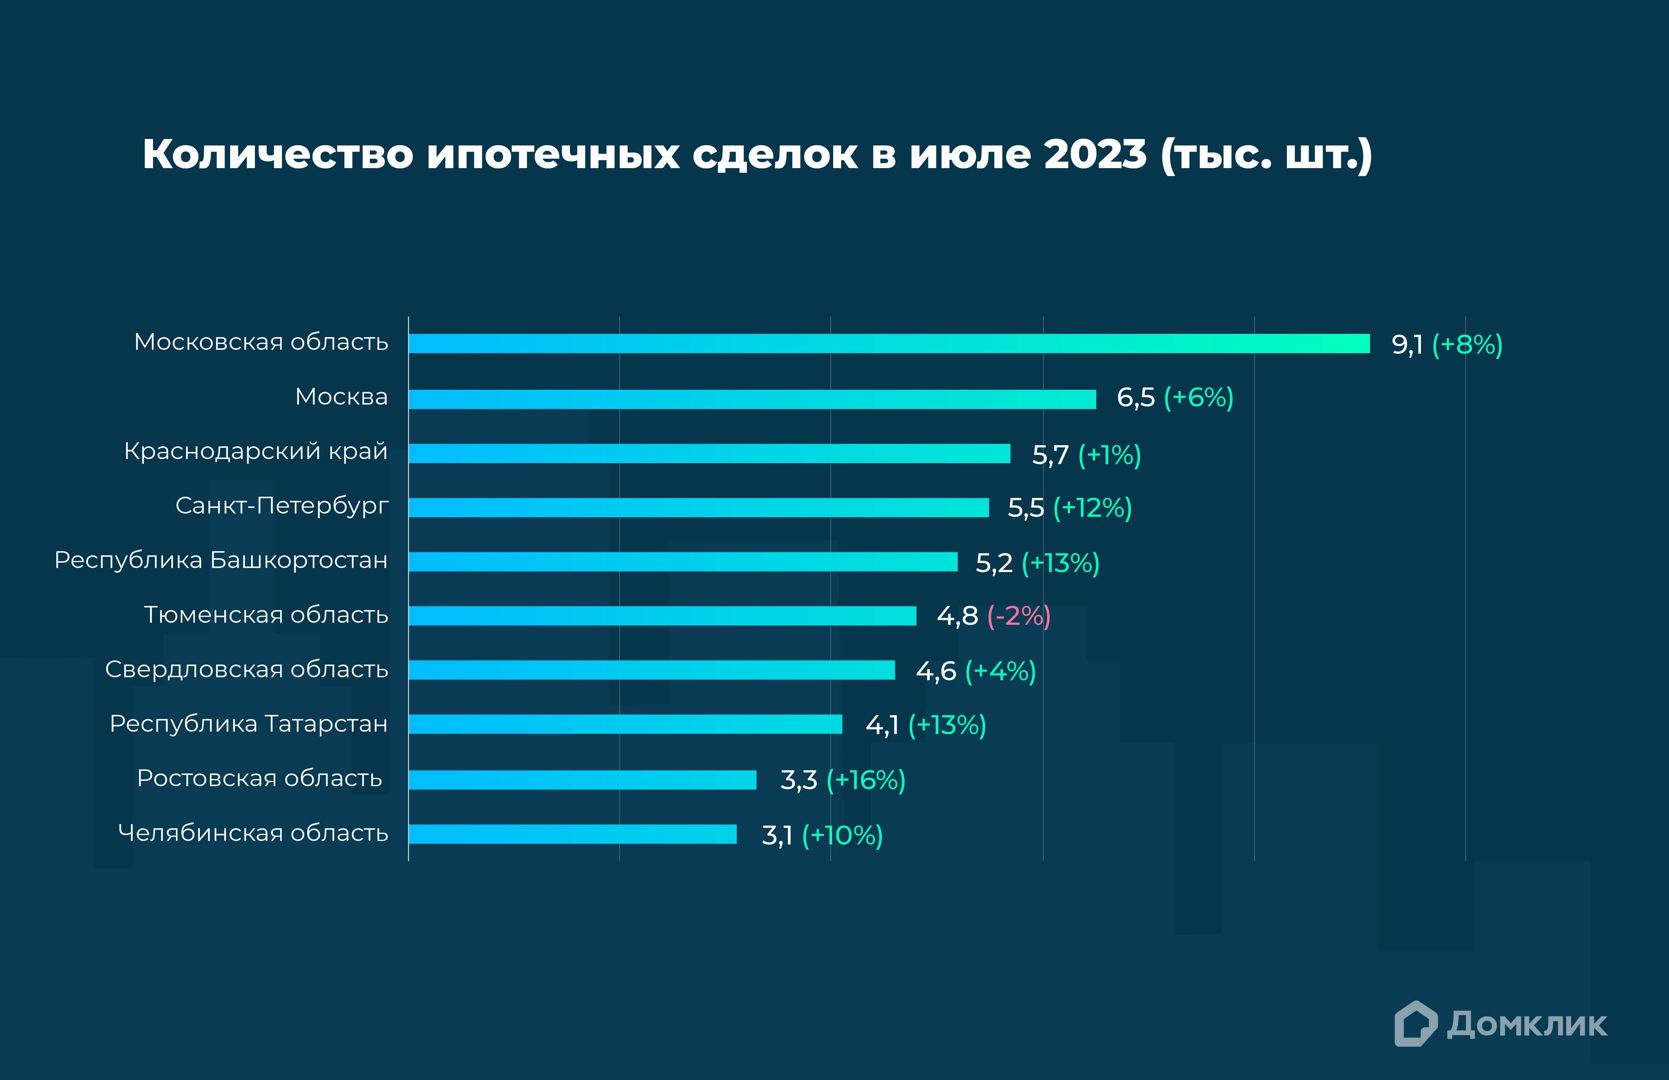 Топ-10 регионов РФ по количеству выдач ипотеки Сбера в июле 2023. Процентный прирост по отношению к июню 2023 для каждого региона показан в скобках. Данные Домклик